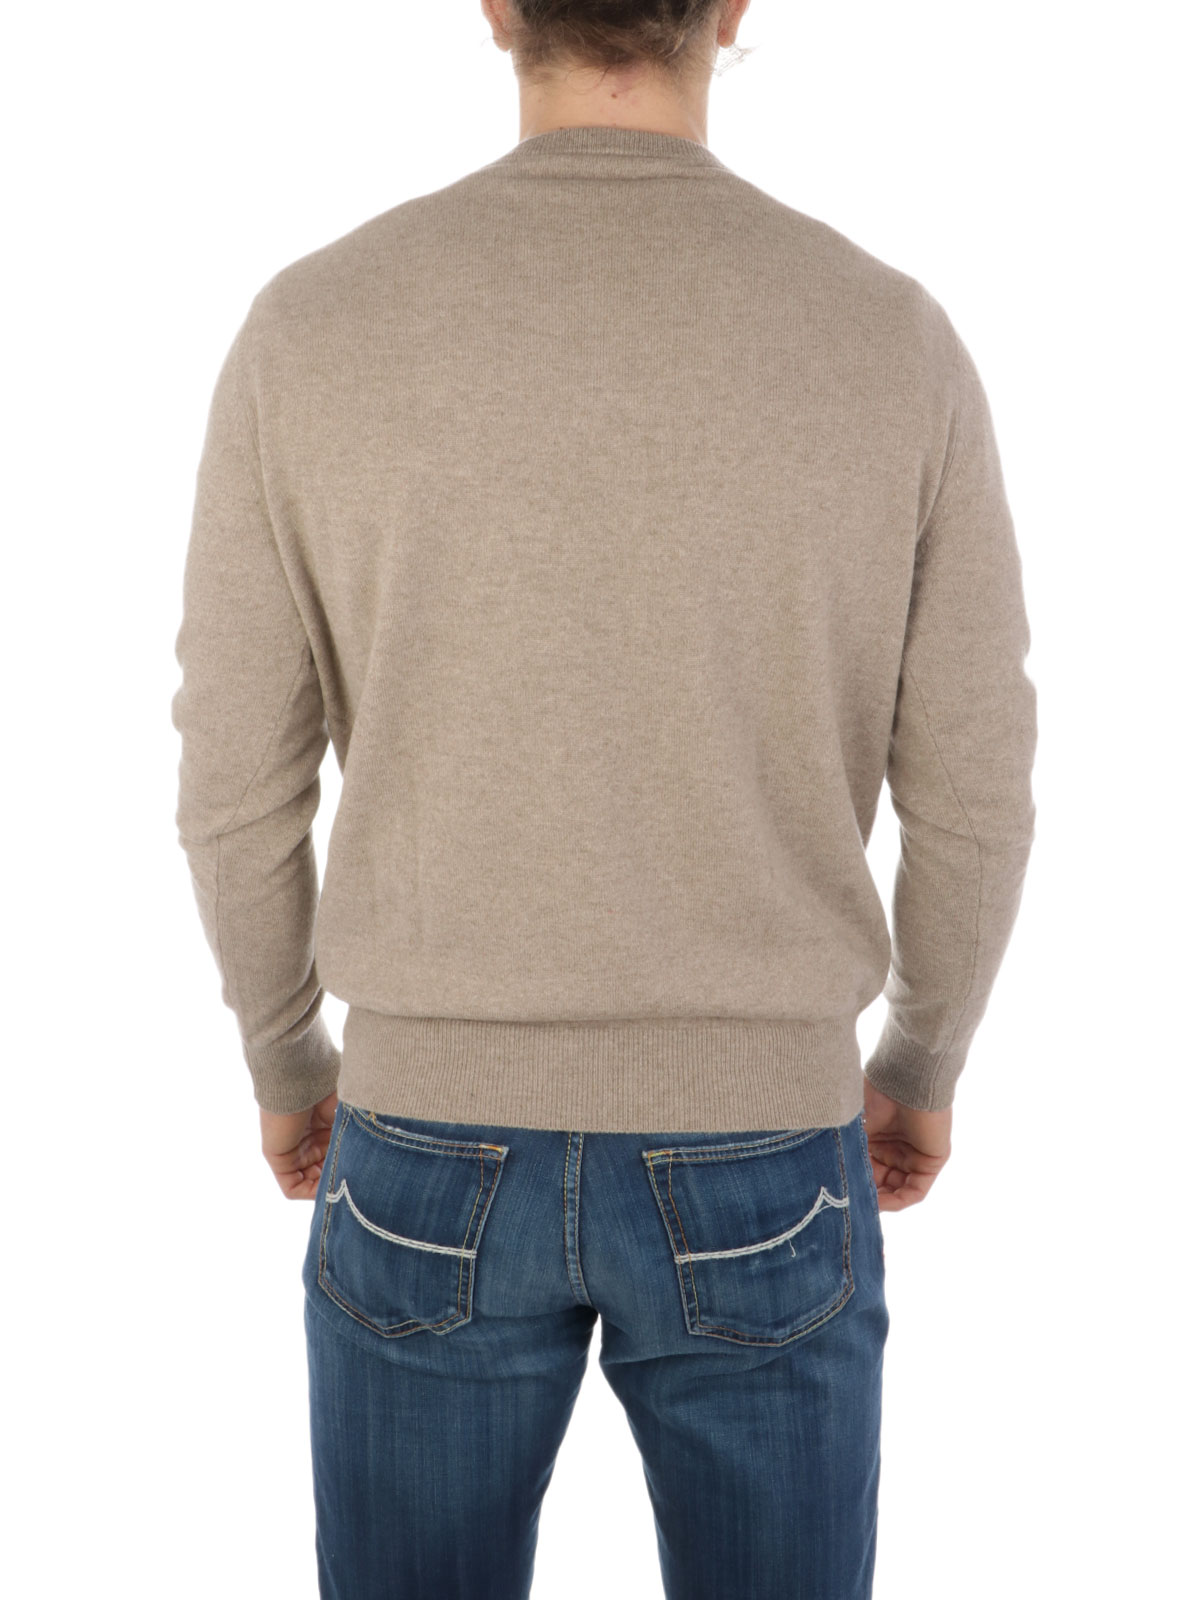 ONES Men's Cashmere Crewneck Sweater Beige | ONES_001 | Botta & B ...